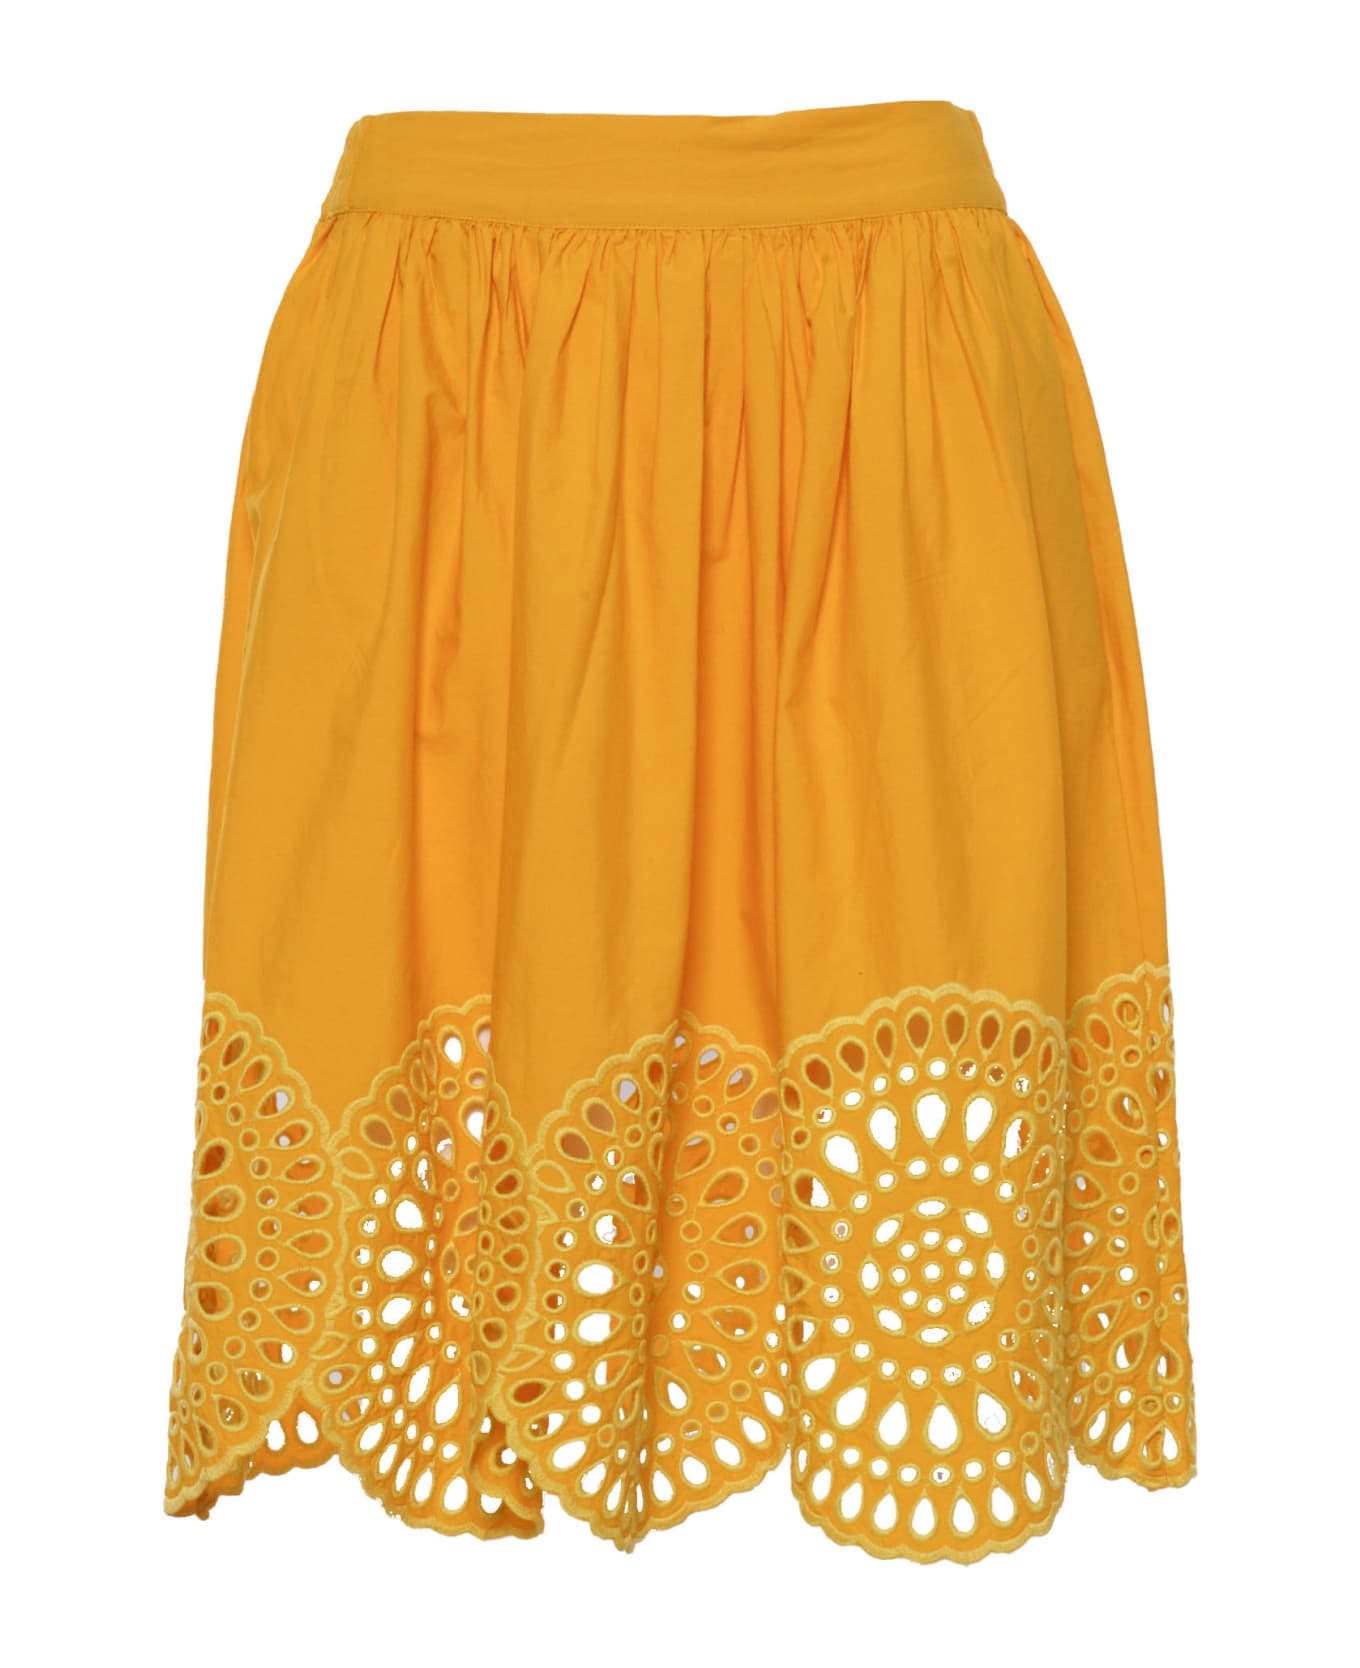 Stella McCartney Kids Yellow Skirt With Lace - YELLOW